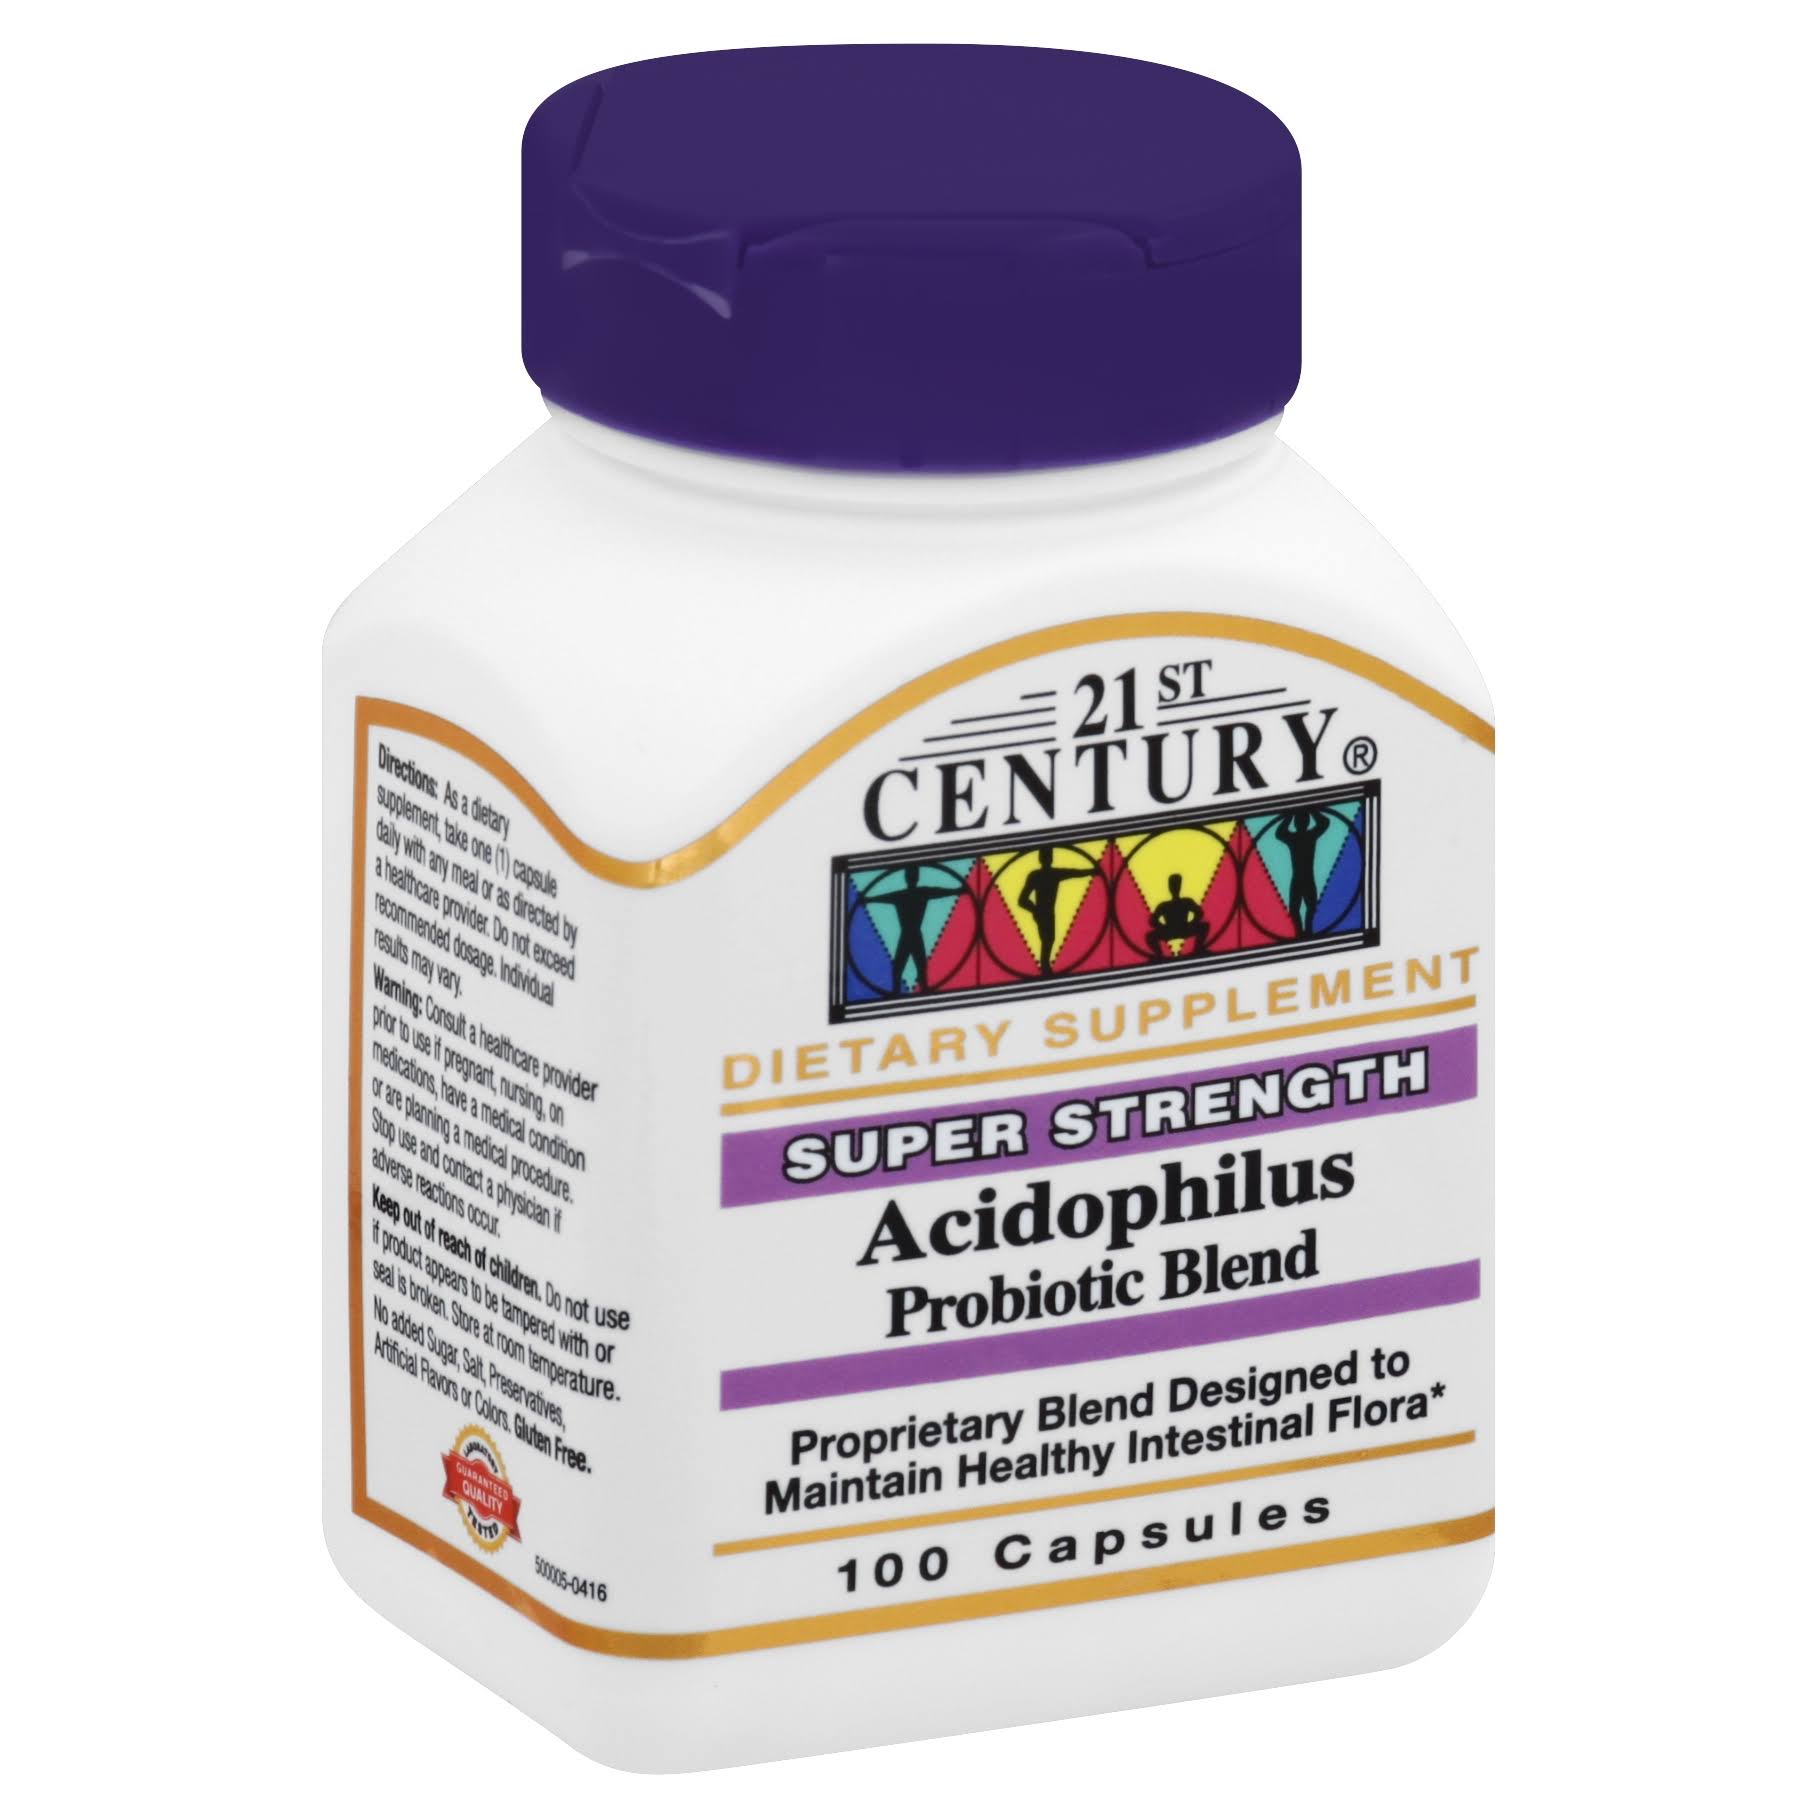 21st Century Acidophilus Probiotic Blend Supplement - 100 Capsules